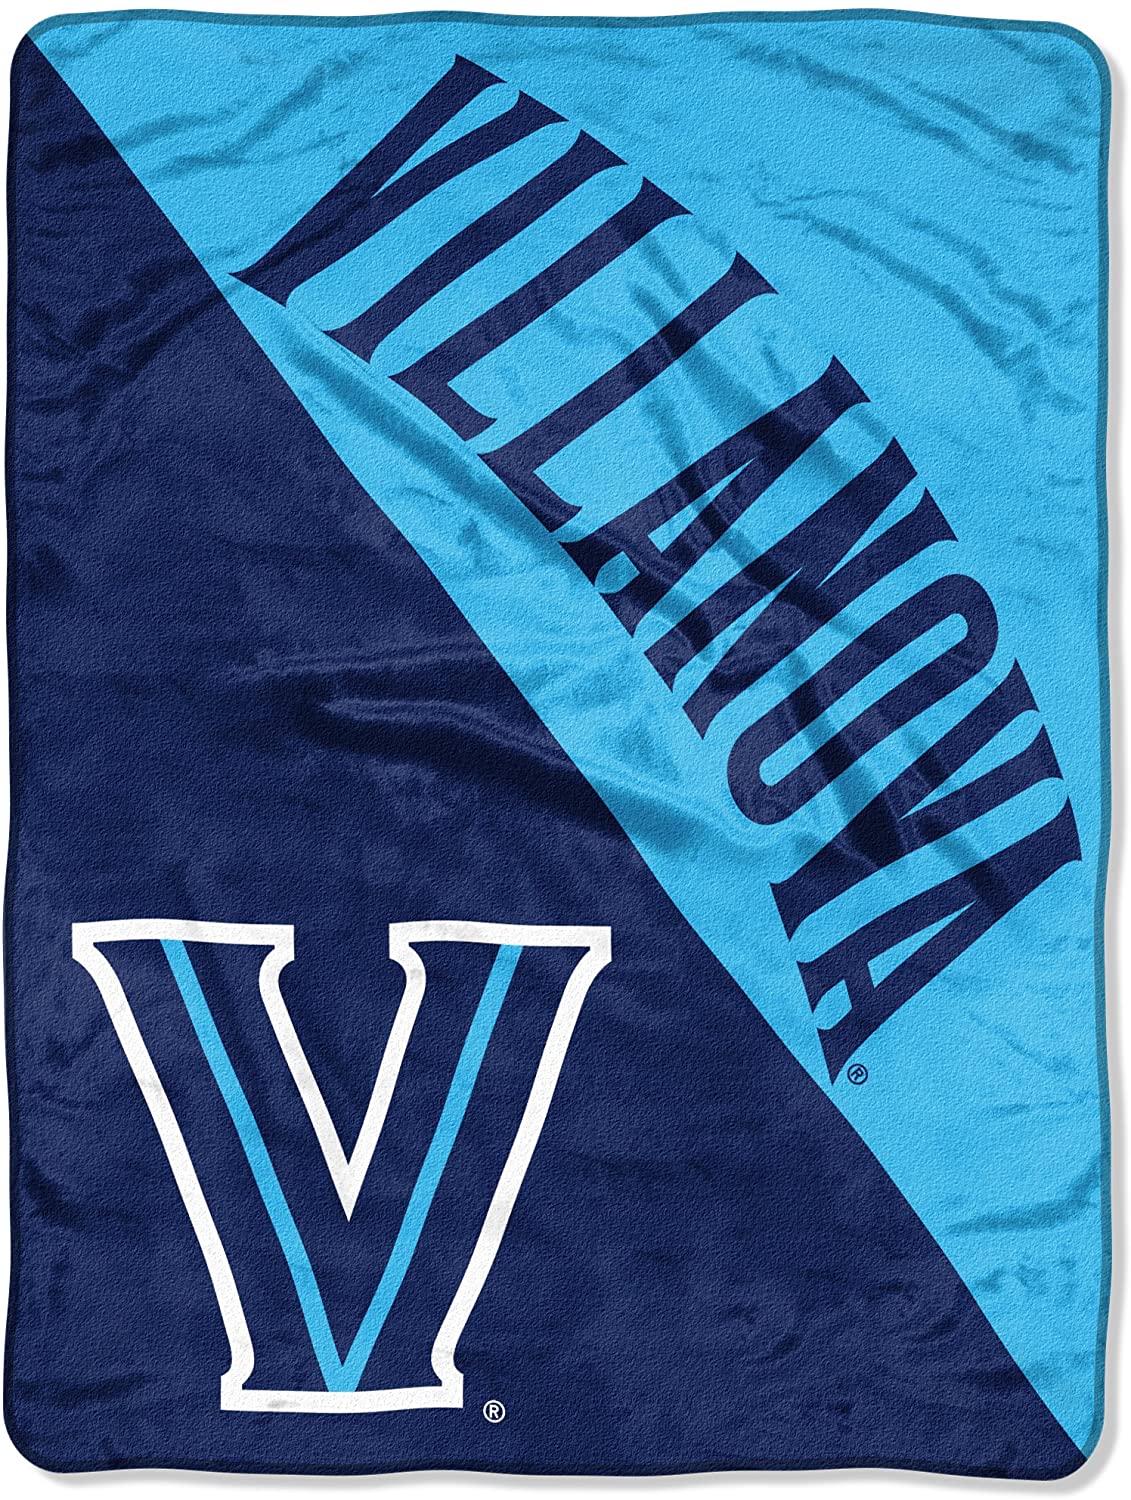 Villanova Wildcats Blanket 46x60 Micro Raschel Halftone Design Rolled - Special Order